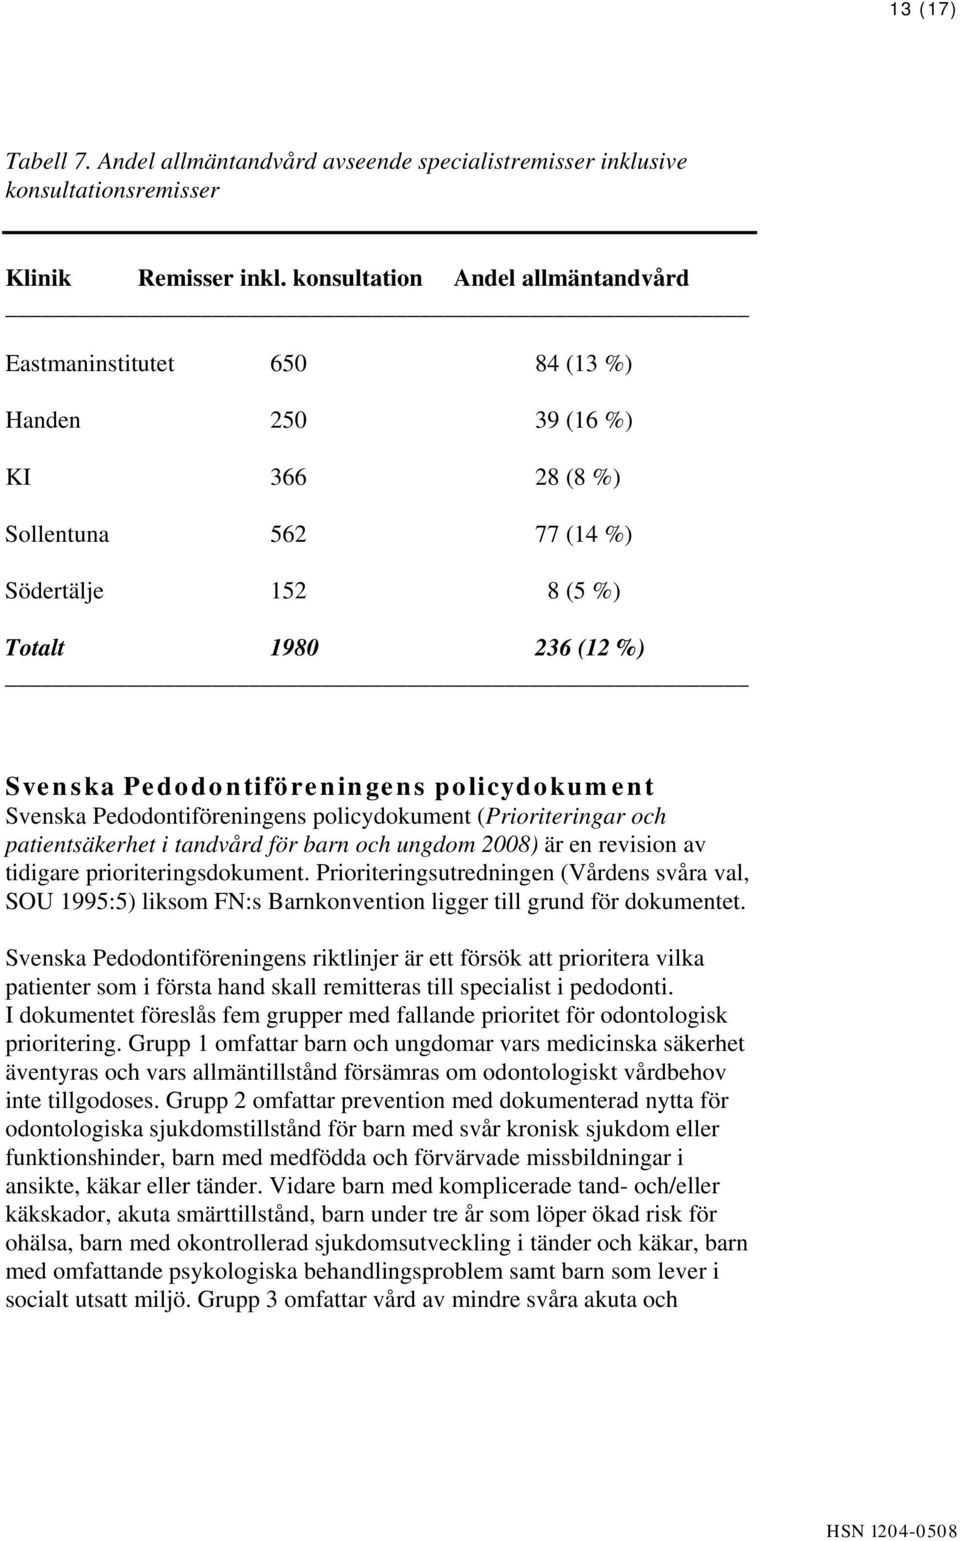 Pedodontiföreningens policydokument Svenska Pedodontiföreningens policydokument (Prioriteringar och patientsäkerhet i tandvård för barn och ungdom 2008) är en revision av tidigare